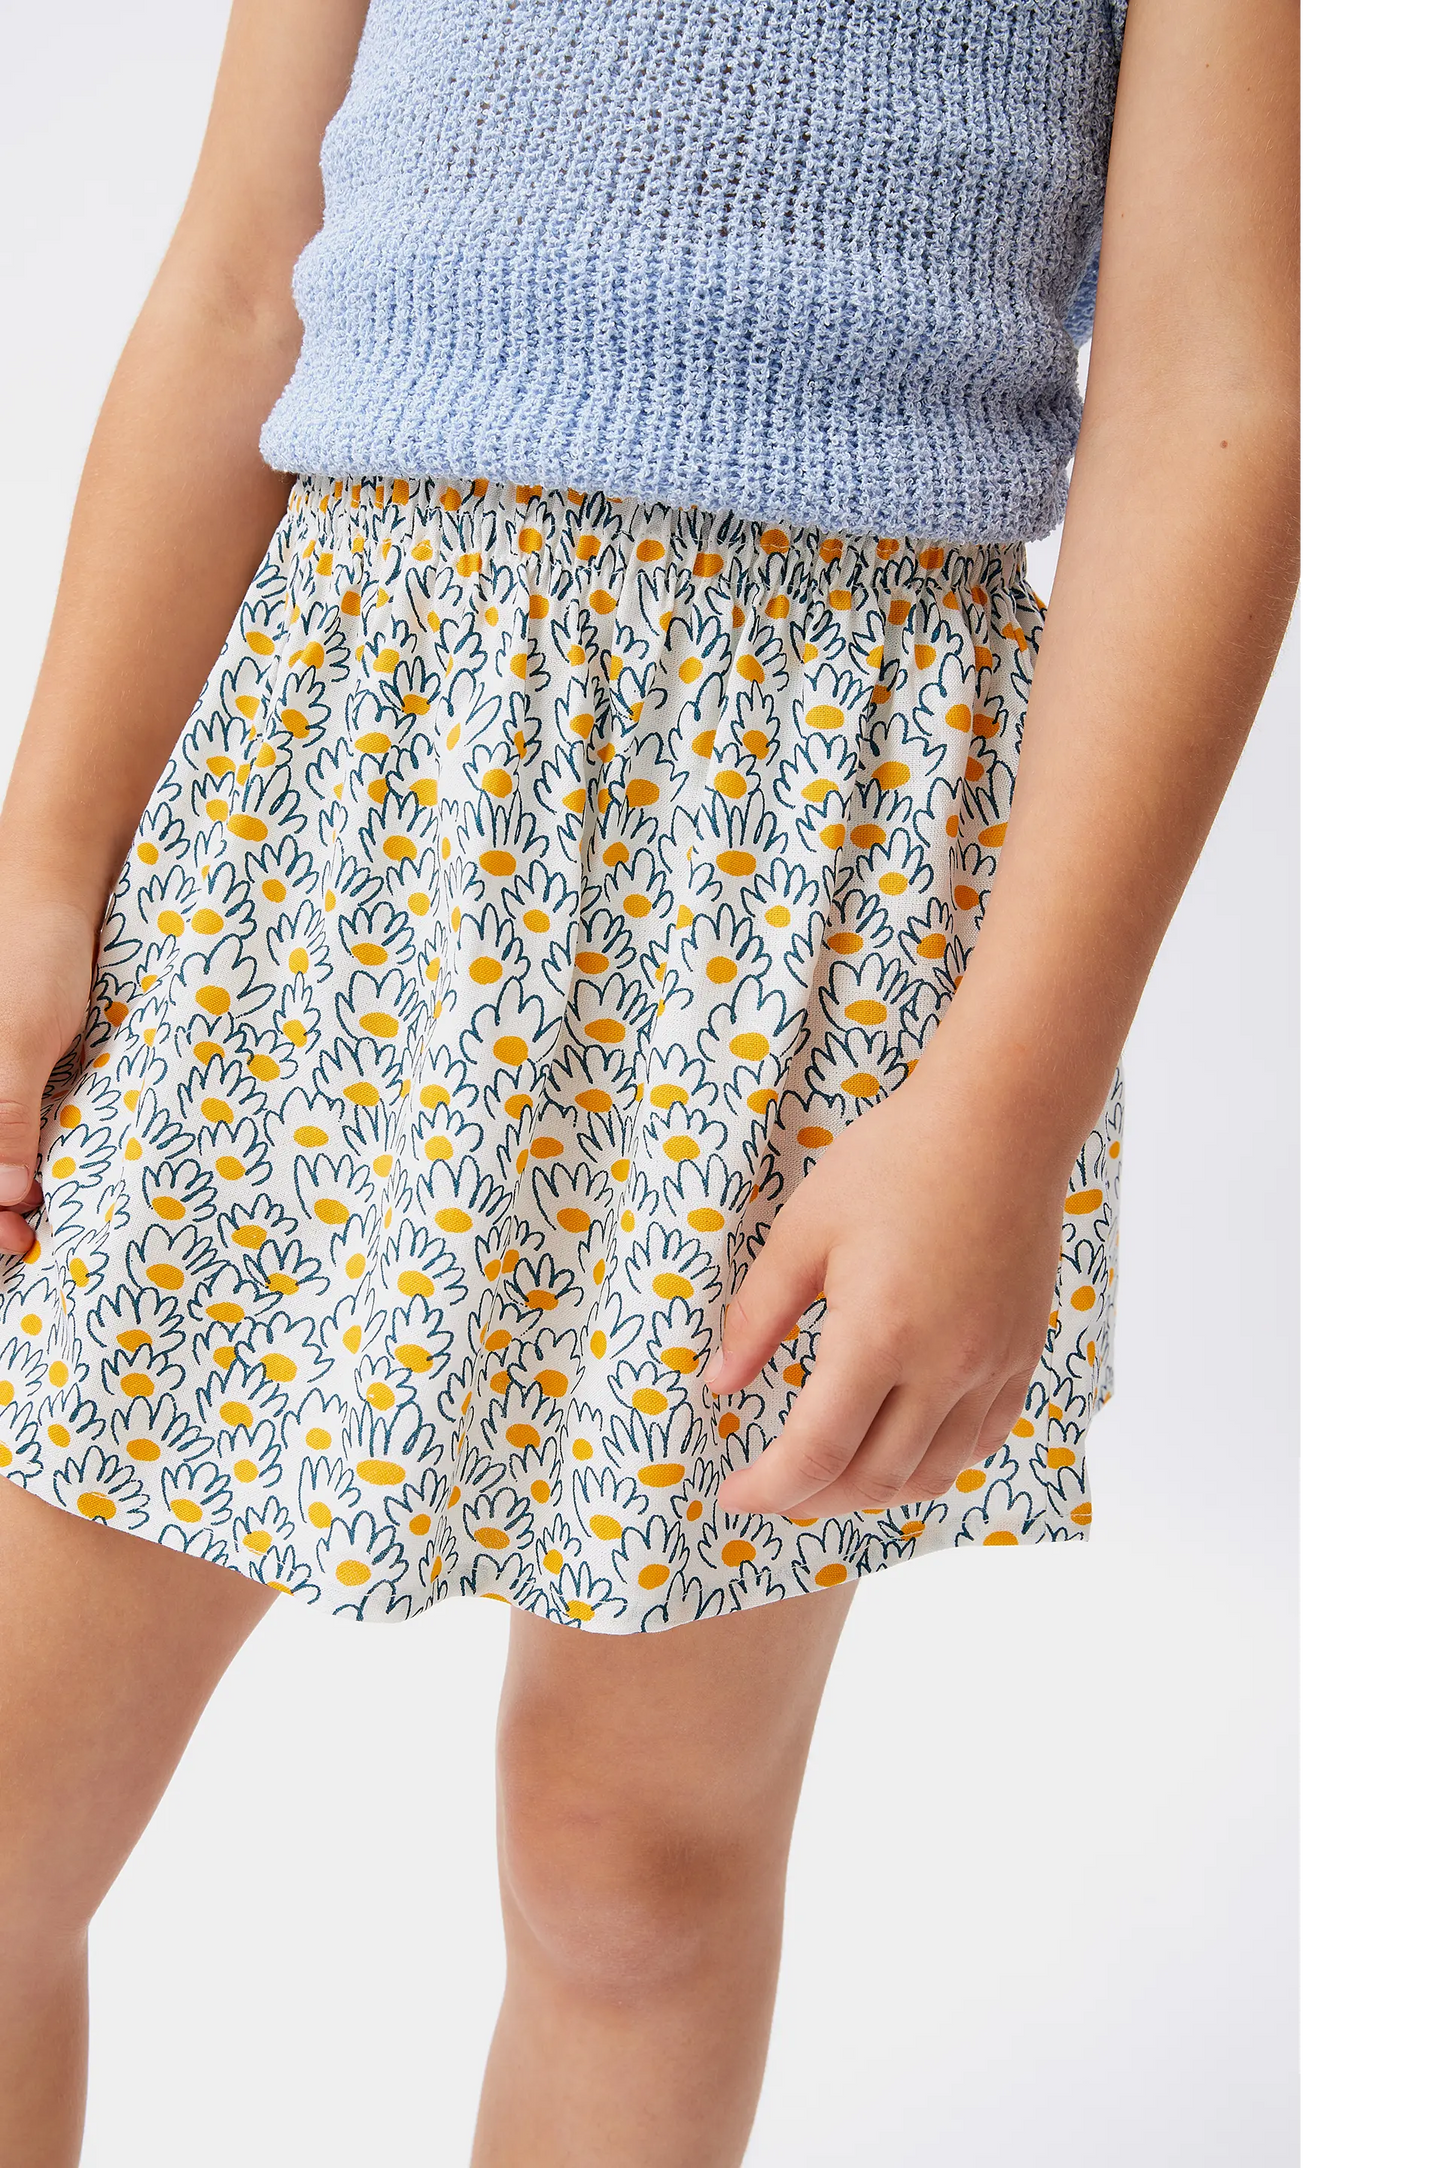 Flower jacquard girl's short skirt